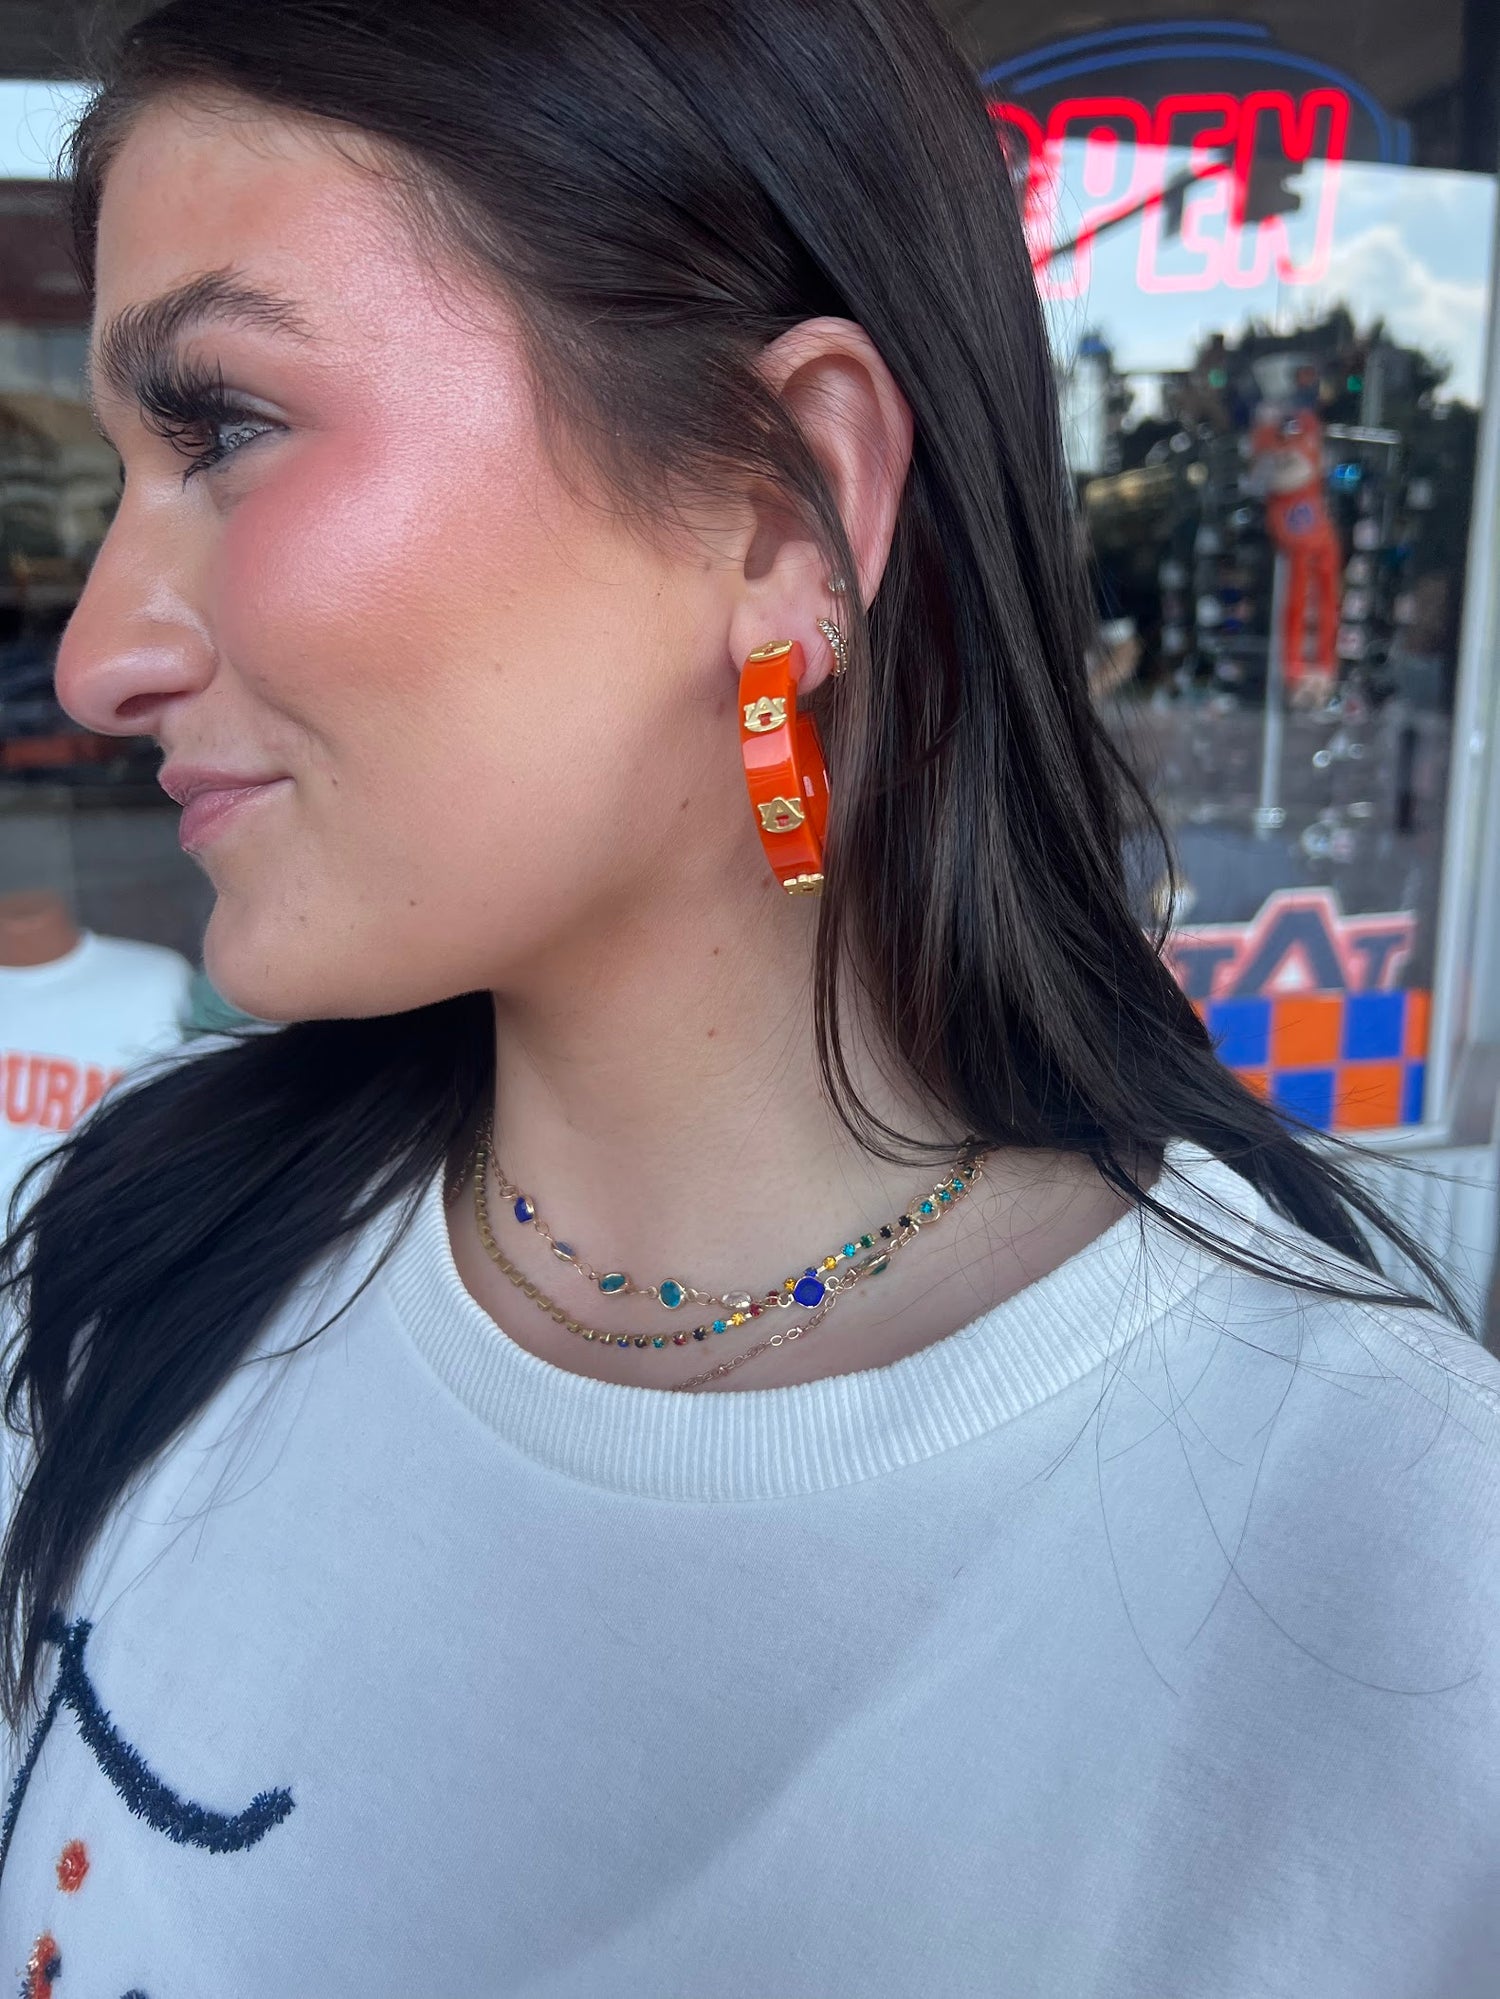 AU Resin Orange Hoop Earring Earrings in  at Wrapsody